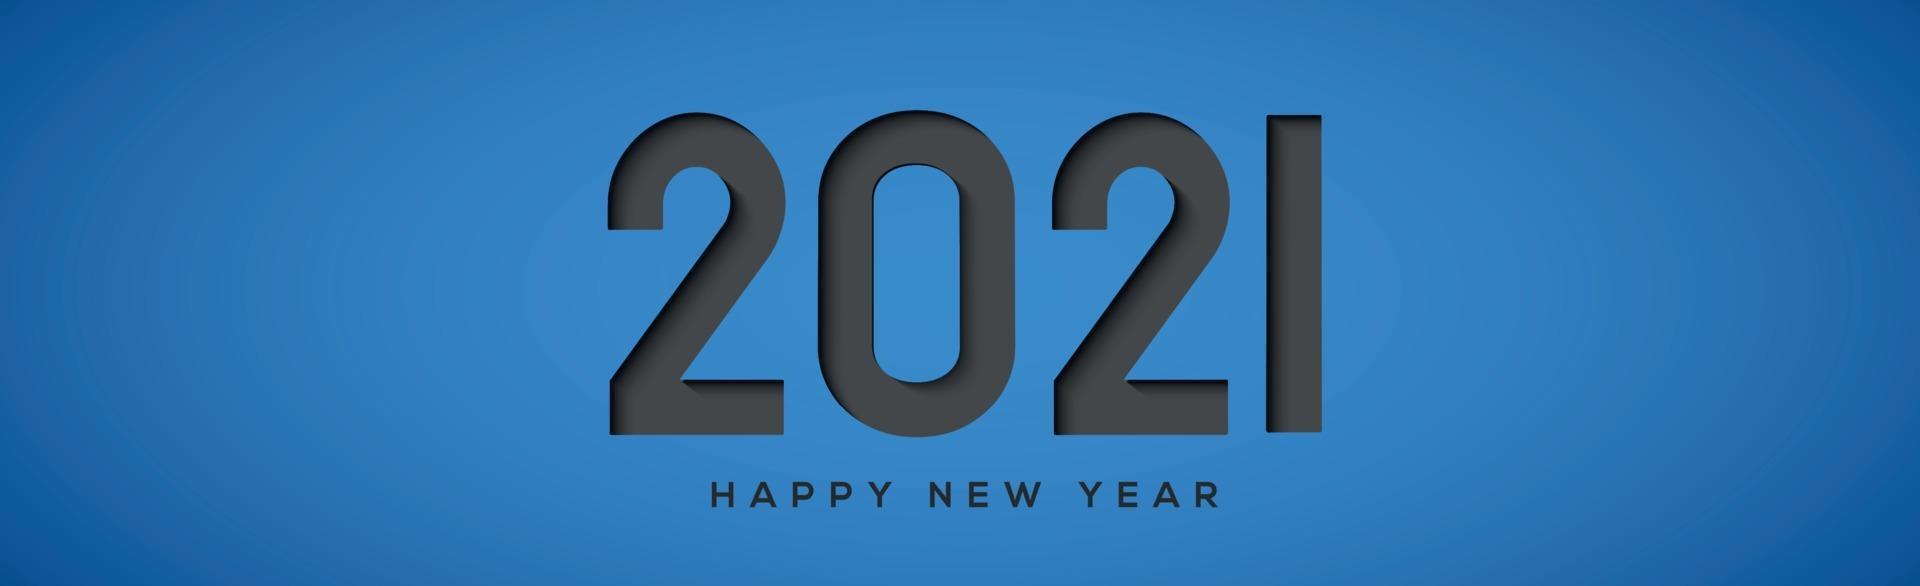 2021 com desejo de ano novo em fundo azul vetor